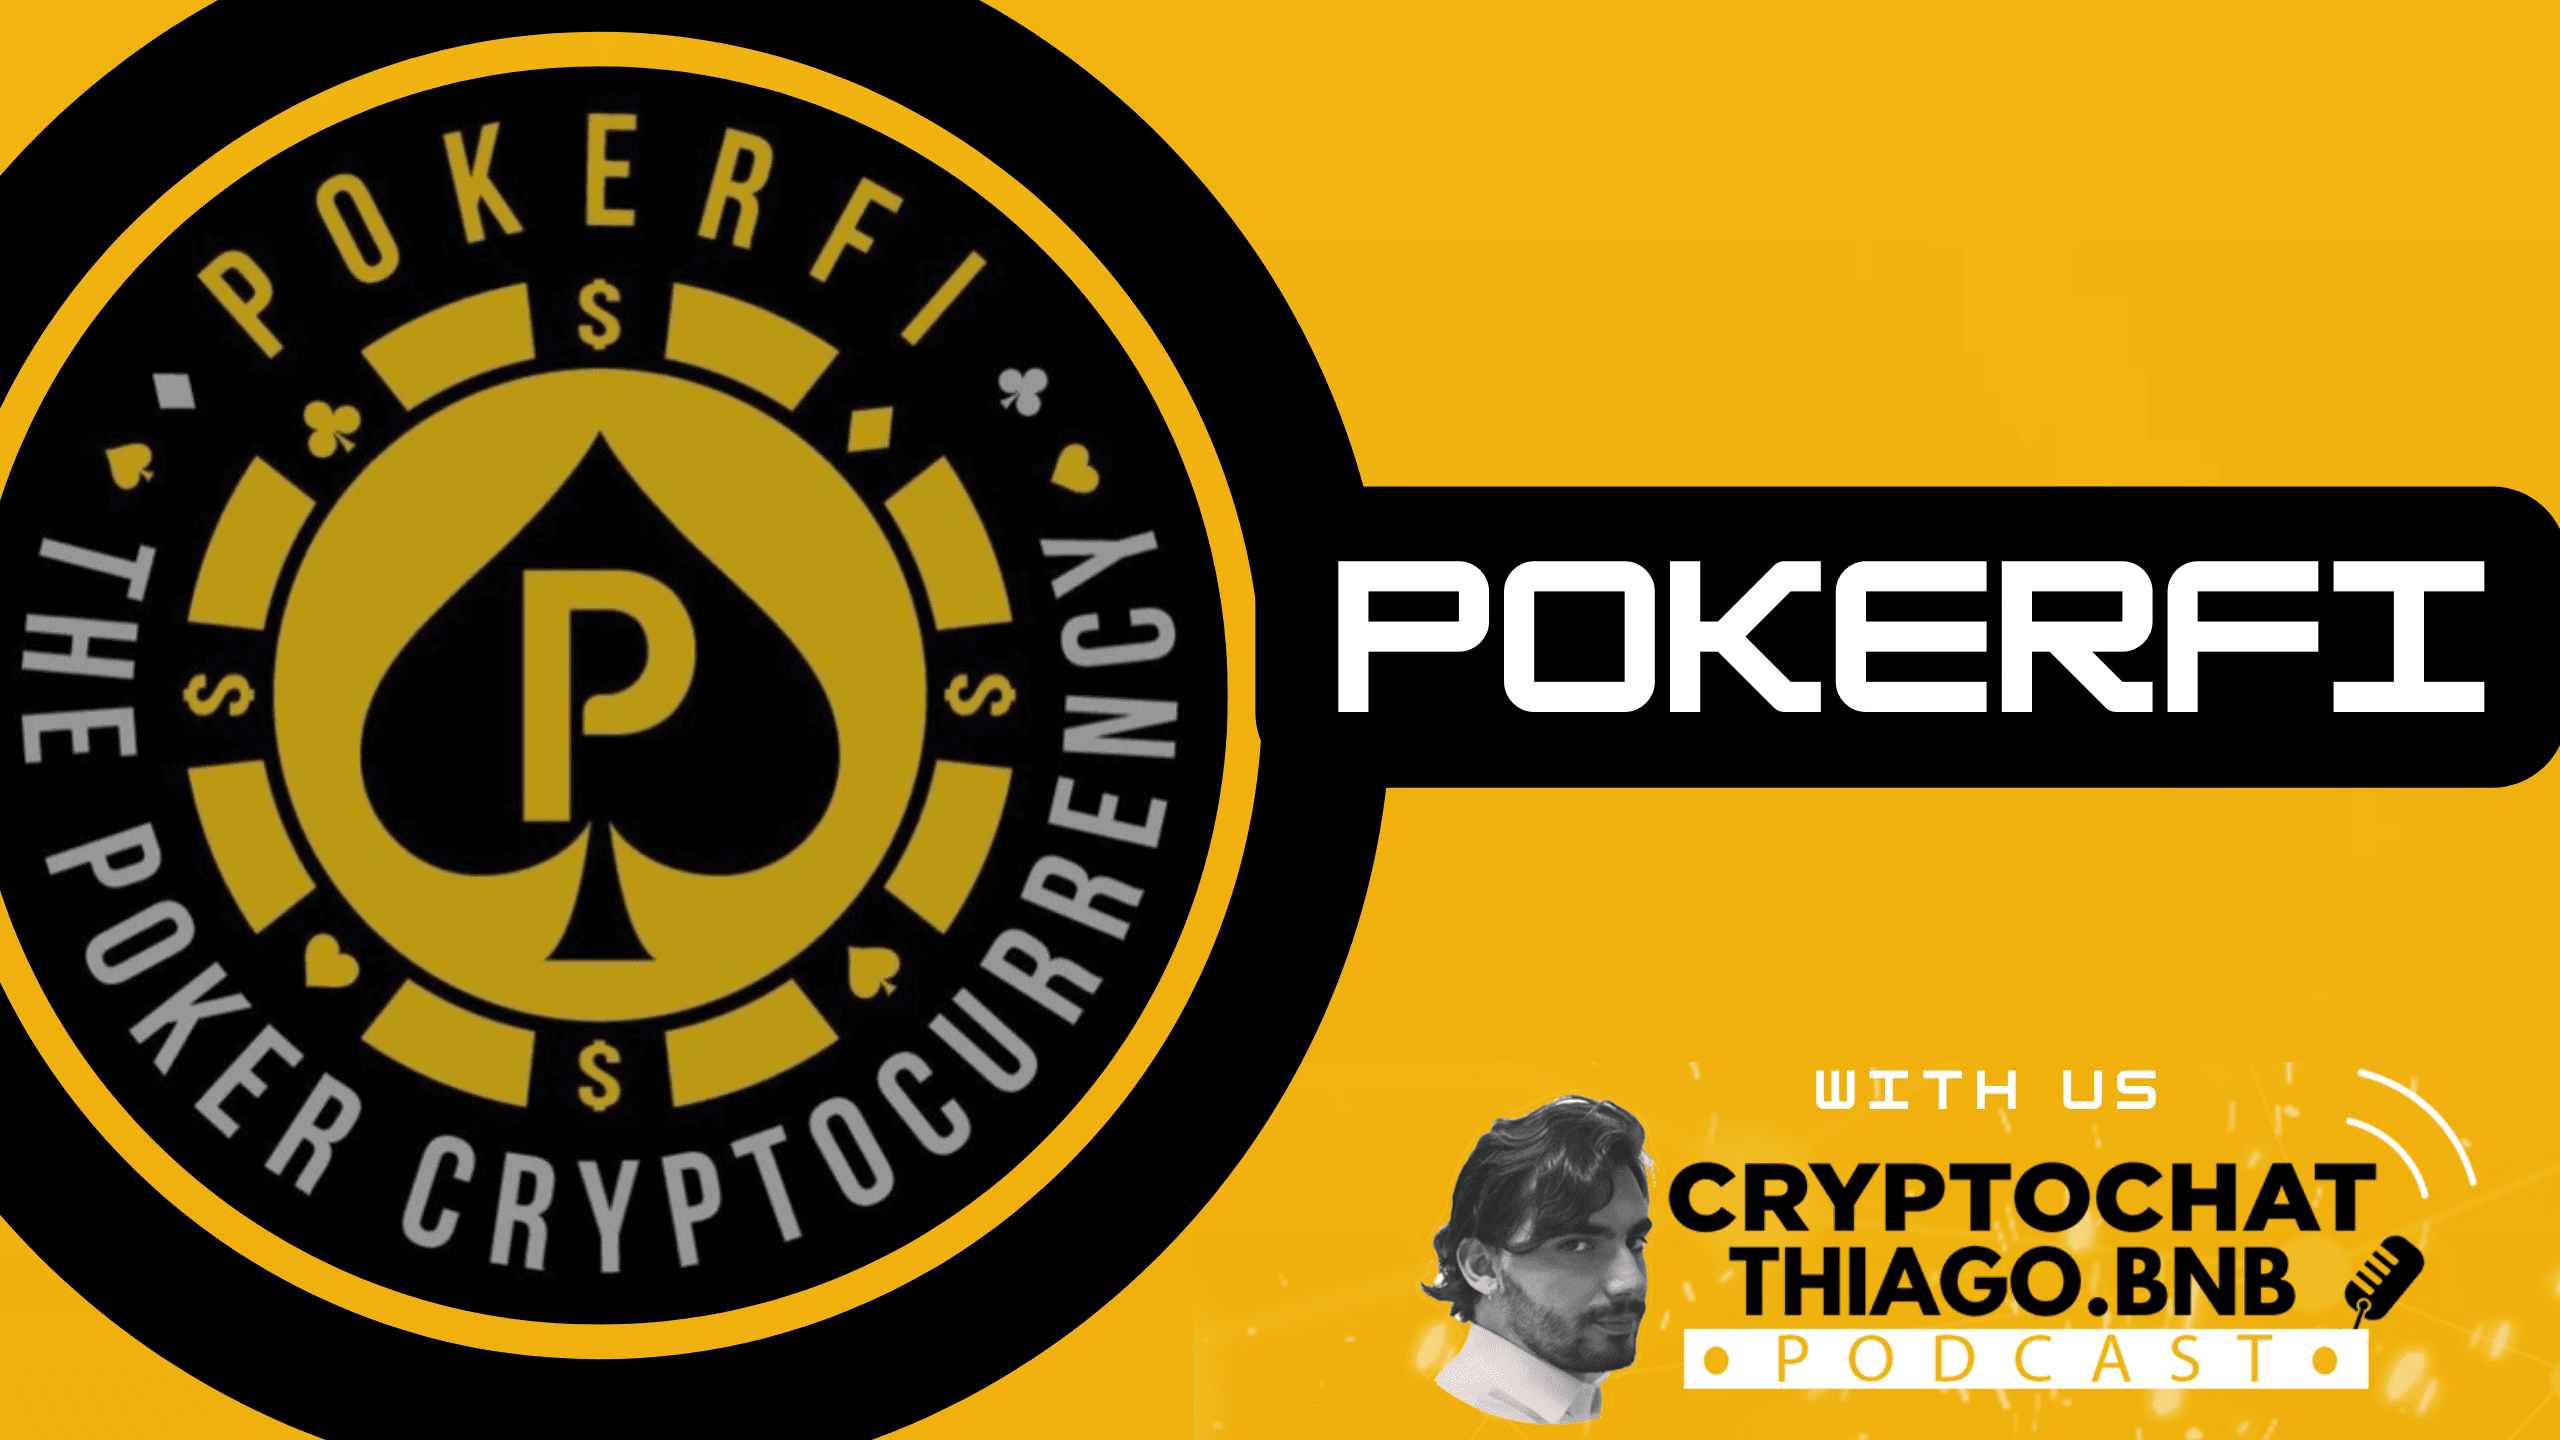 CryptoChat 10 - PokerFI : A moeda dos jogadores